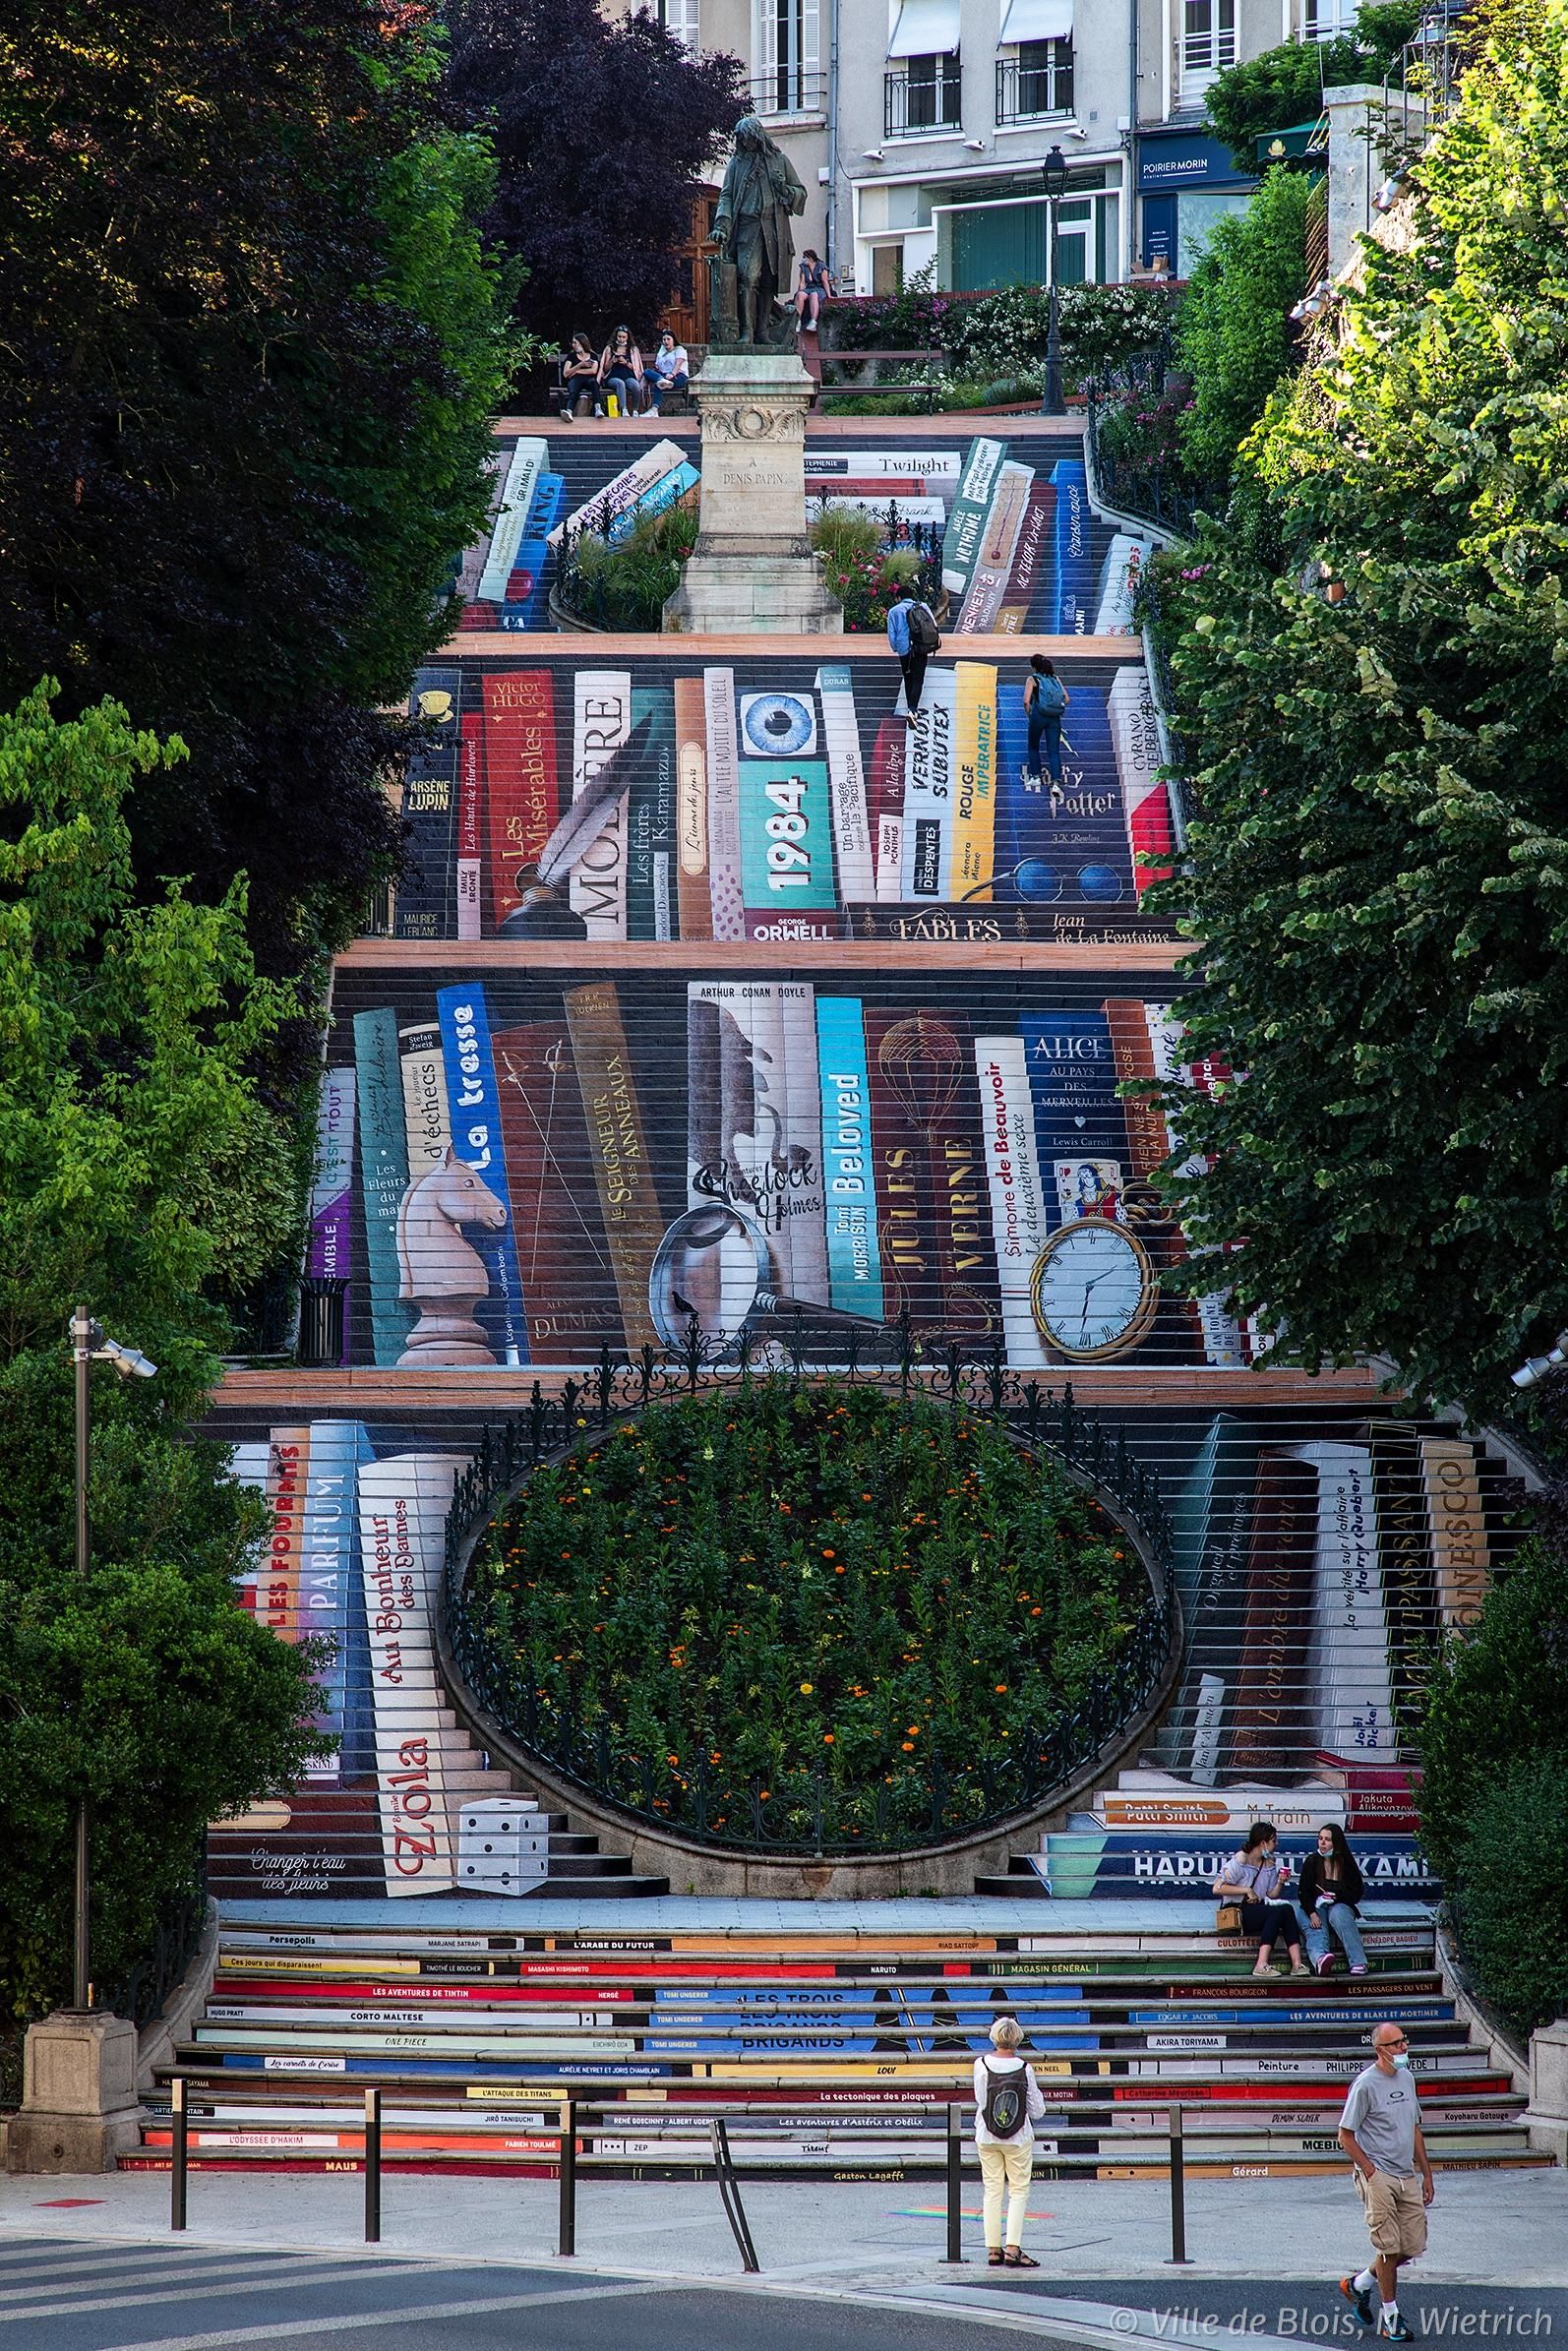 Photo d’ensemble de l’escalier, dont les contremarches sont décorées pour ensemble former l’illusion d’une bibliothèque géante, comportant une centaine de livres.